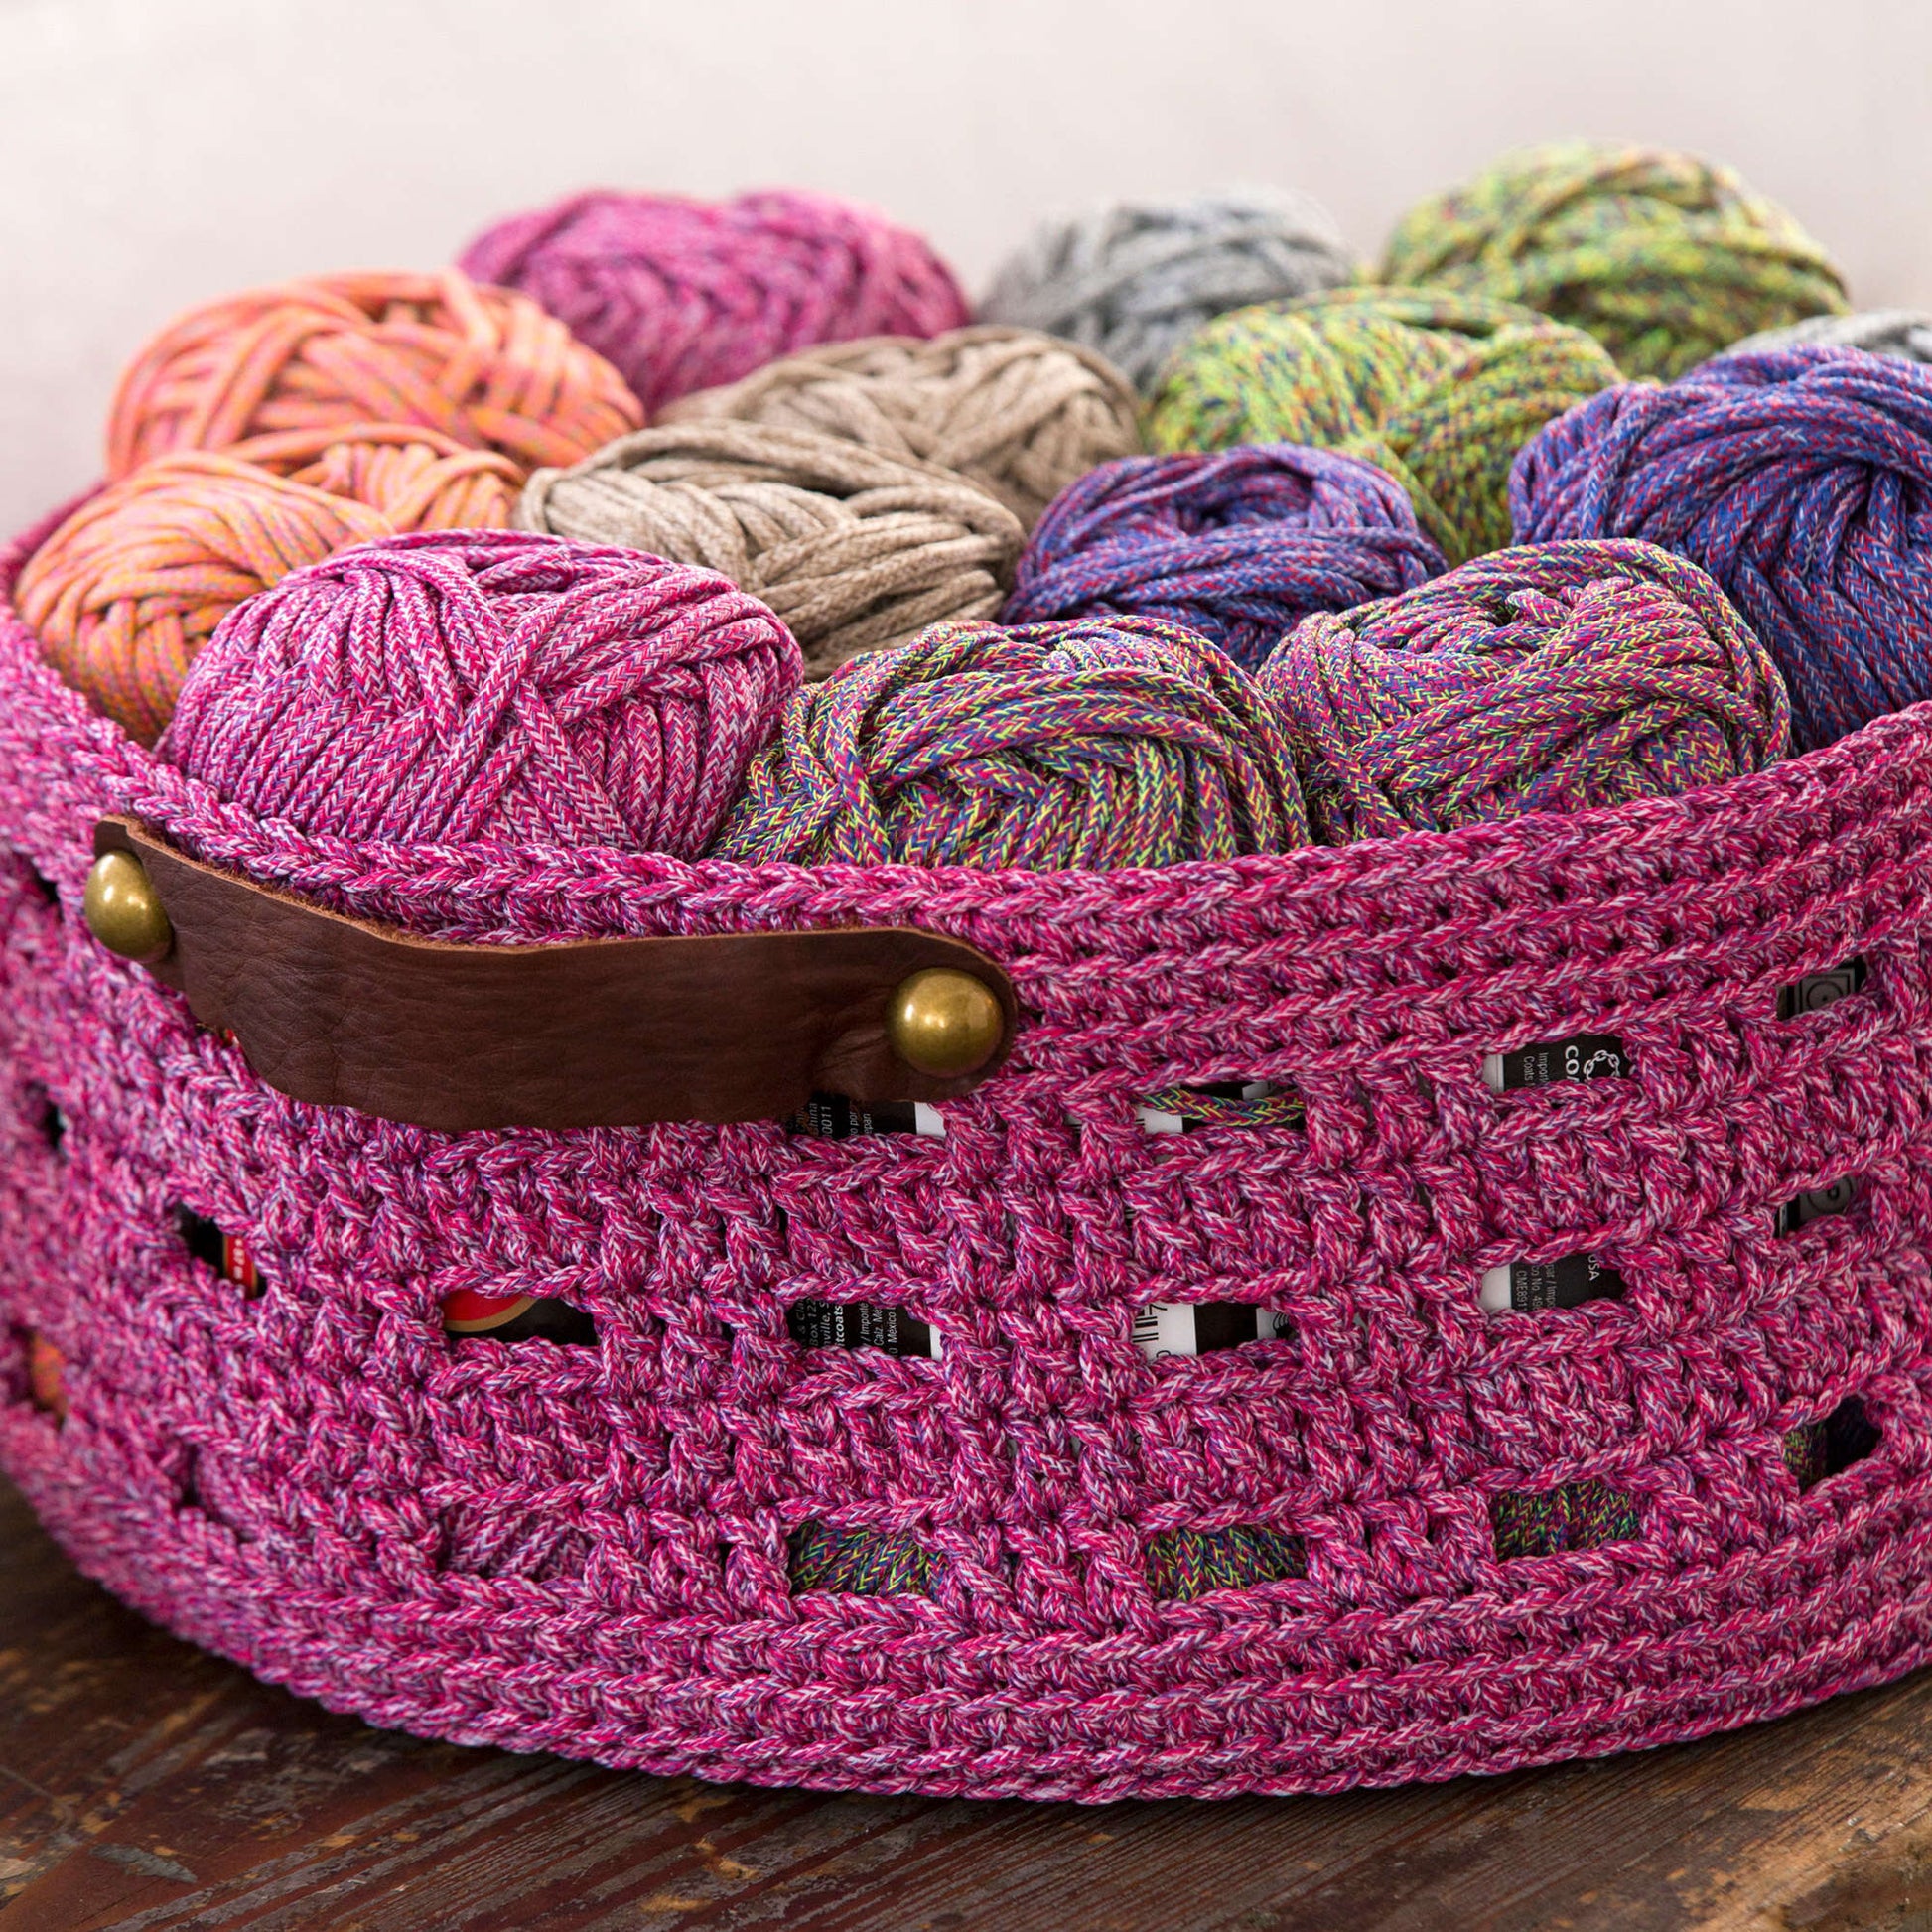 Free Red Heart Crochet Bricks Basket Pattern